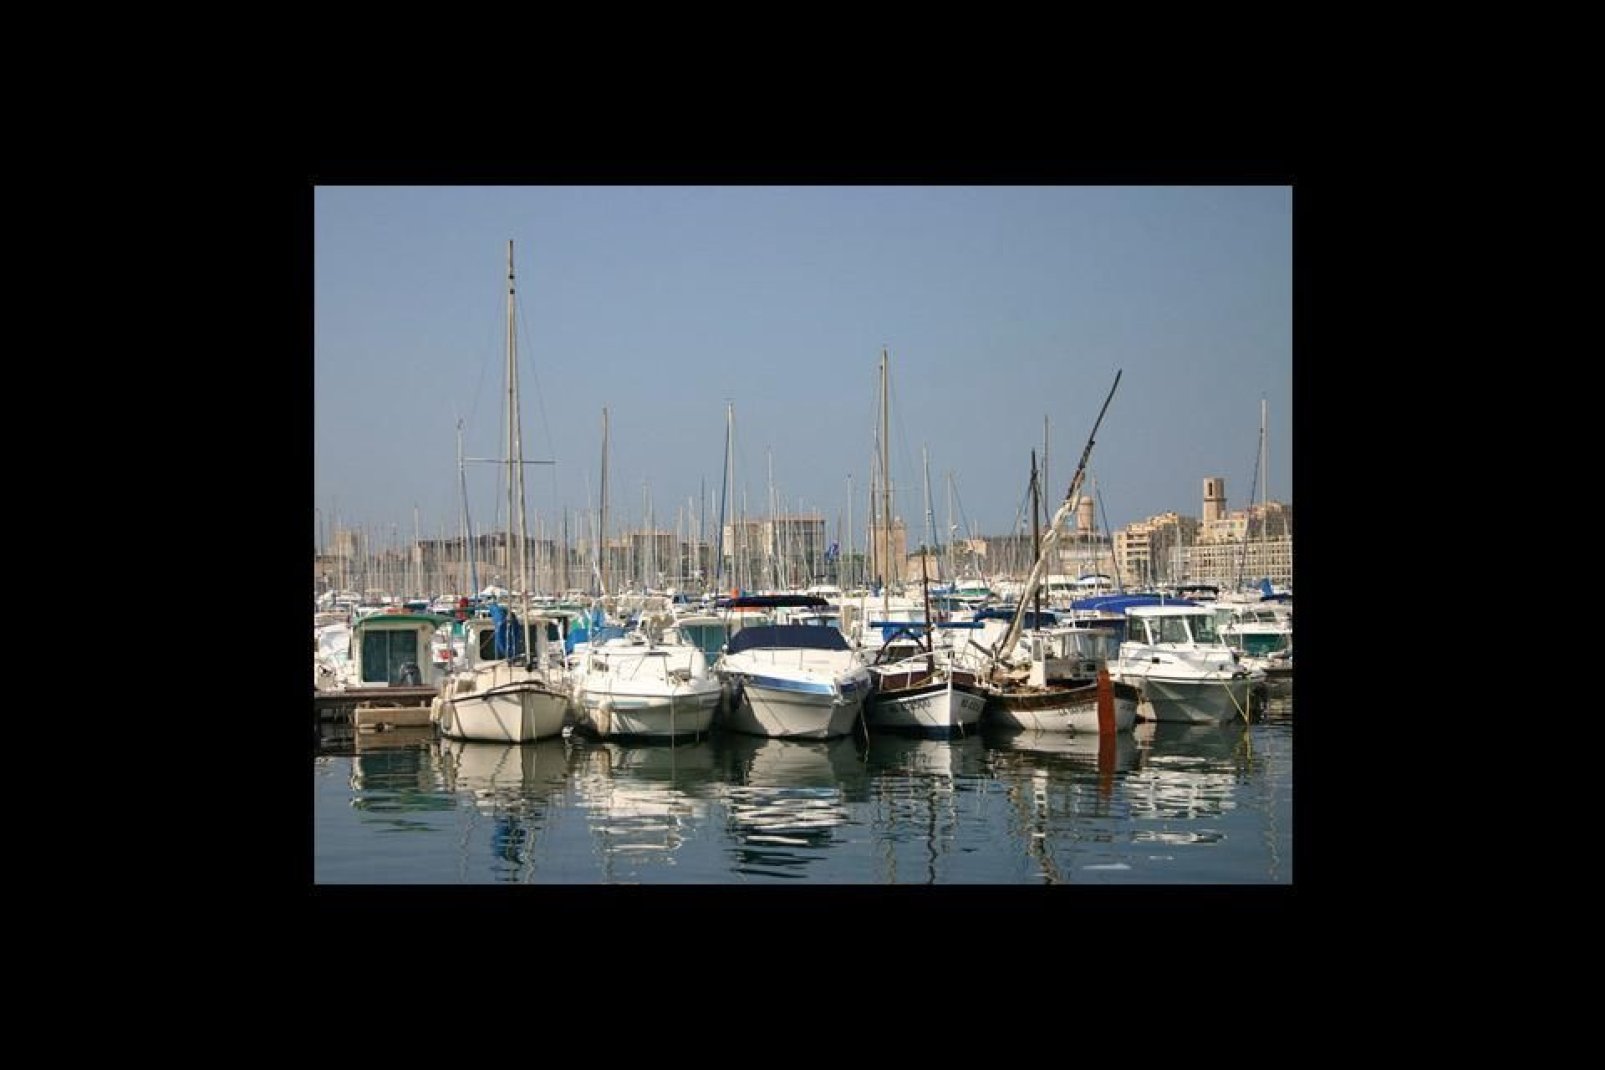 Der Freizeithafen von Marseille, ein wichtiger Teil der Stadt, in dem zahlreiche Veranstaltungen stattfinden.